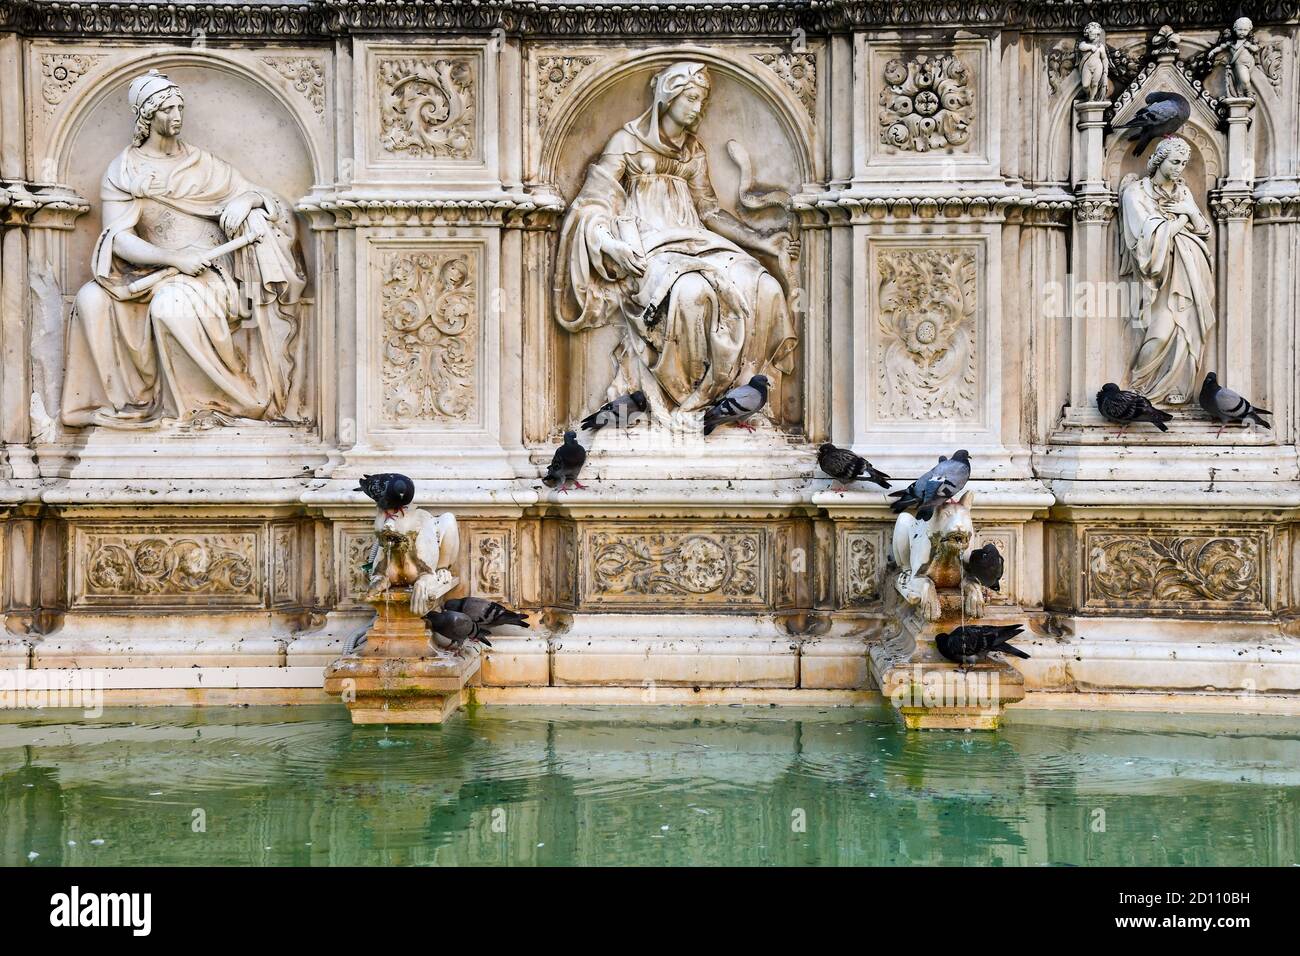 Détail de la fonte Gaia, une fontaine monumentale sur la place Piazza del Campo au centre de Sienne, site classé au patrimoine mondial de l'UNESCO, Toscane, Italie Banque D'Images